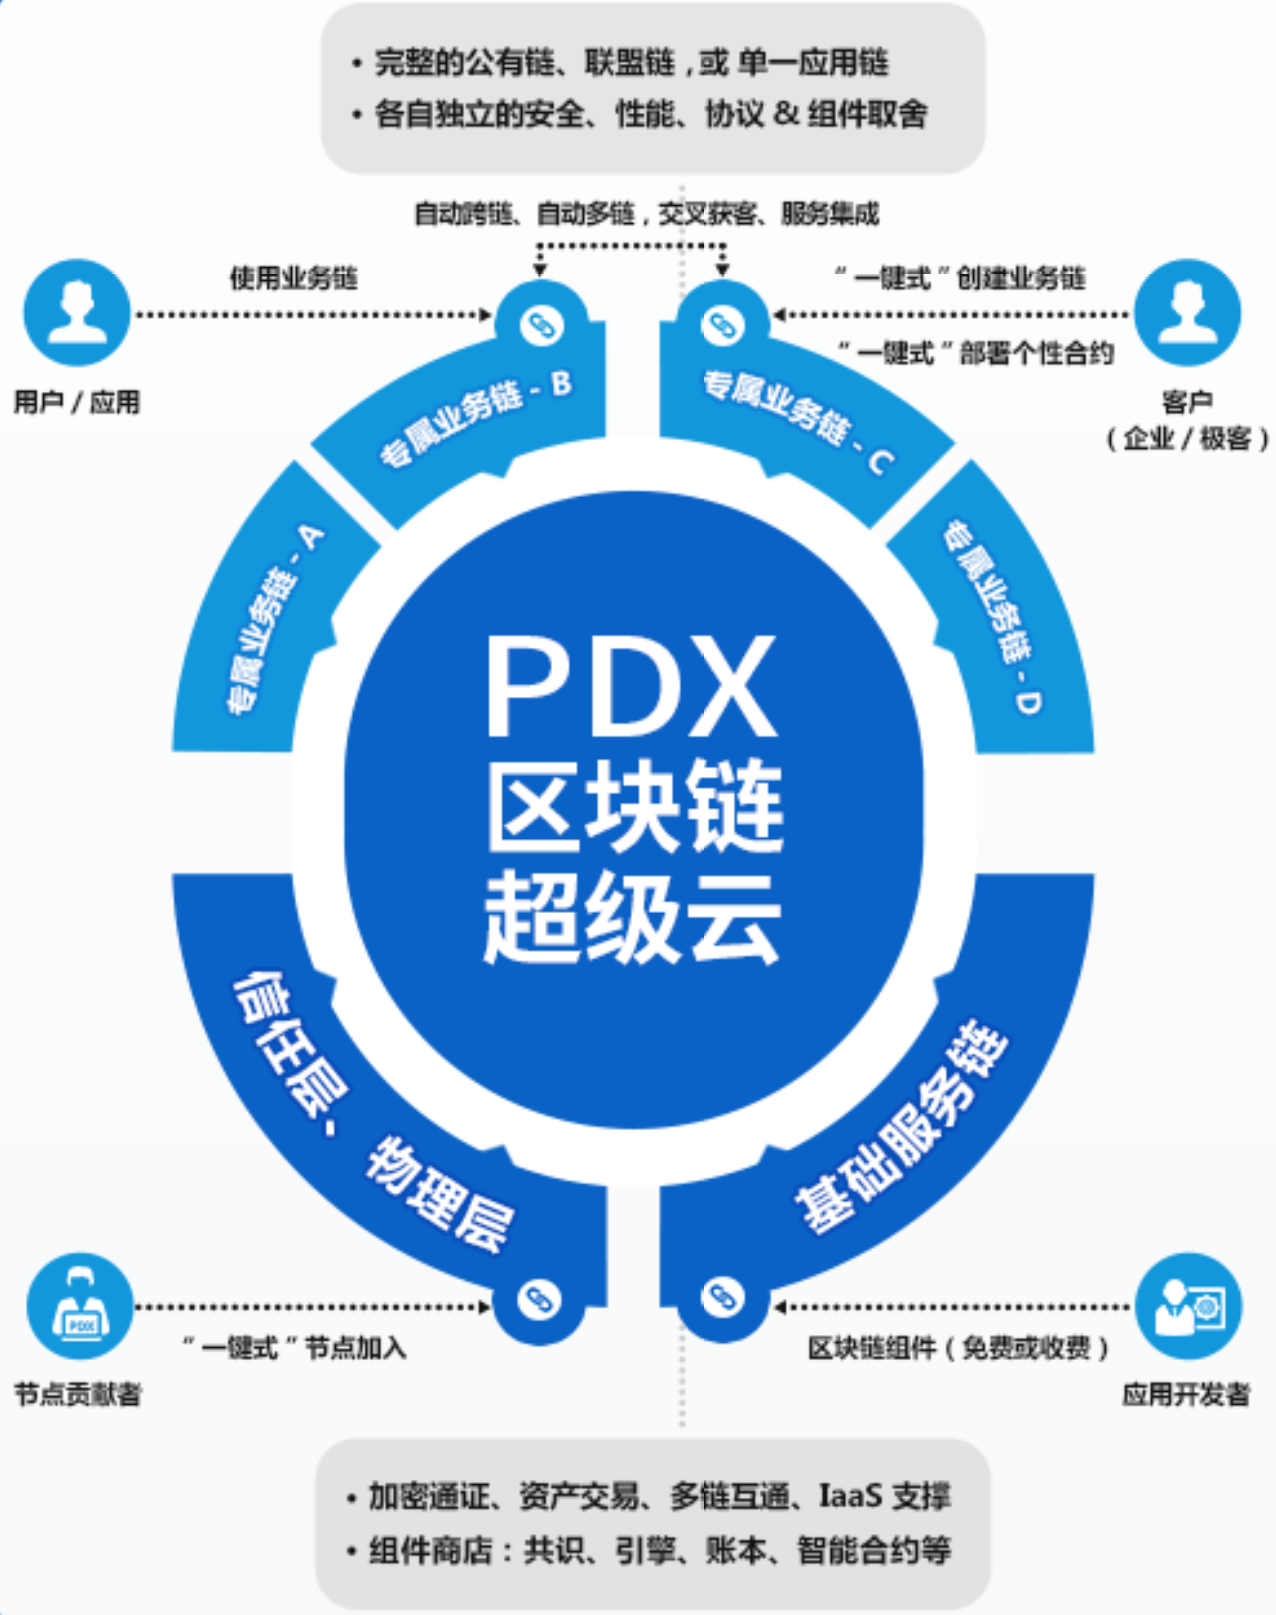 被UB瑞银称为“中国本土最有发展前景”的区块链项目——PDX